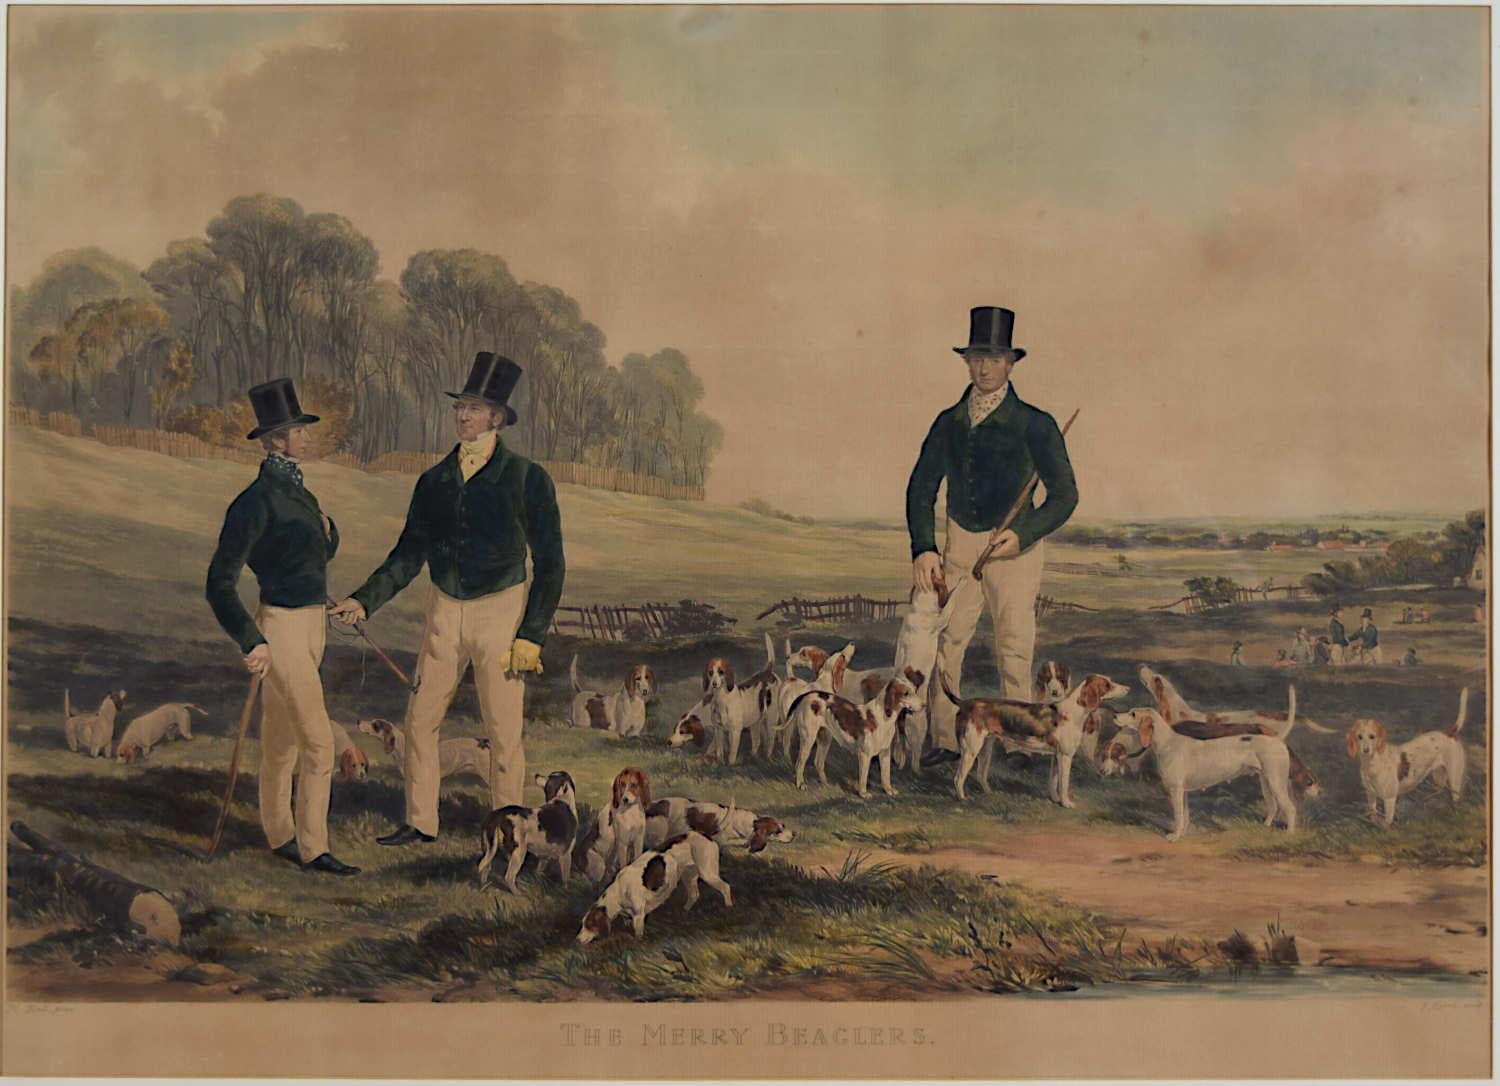 Gravure de John Harris « The Merry Beaglers » d'après le tableau d'Harry Hall de 1845